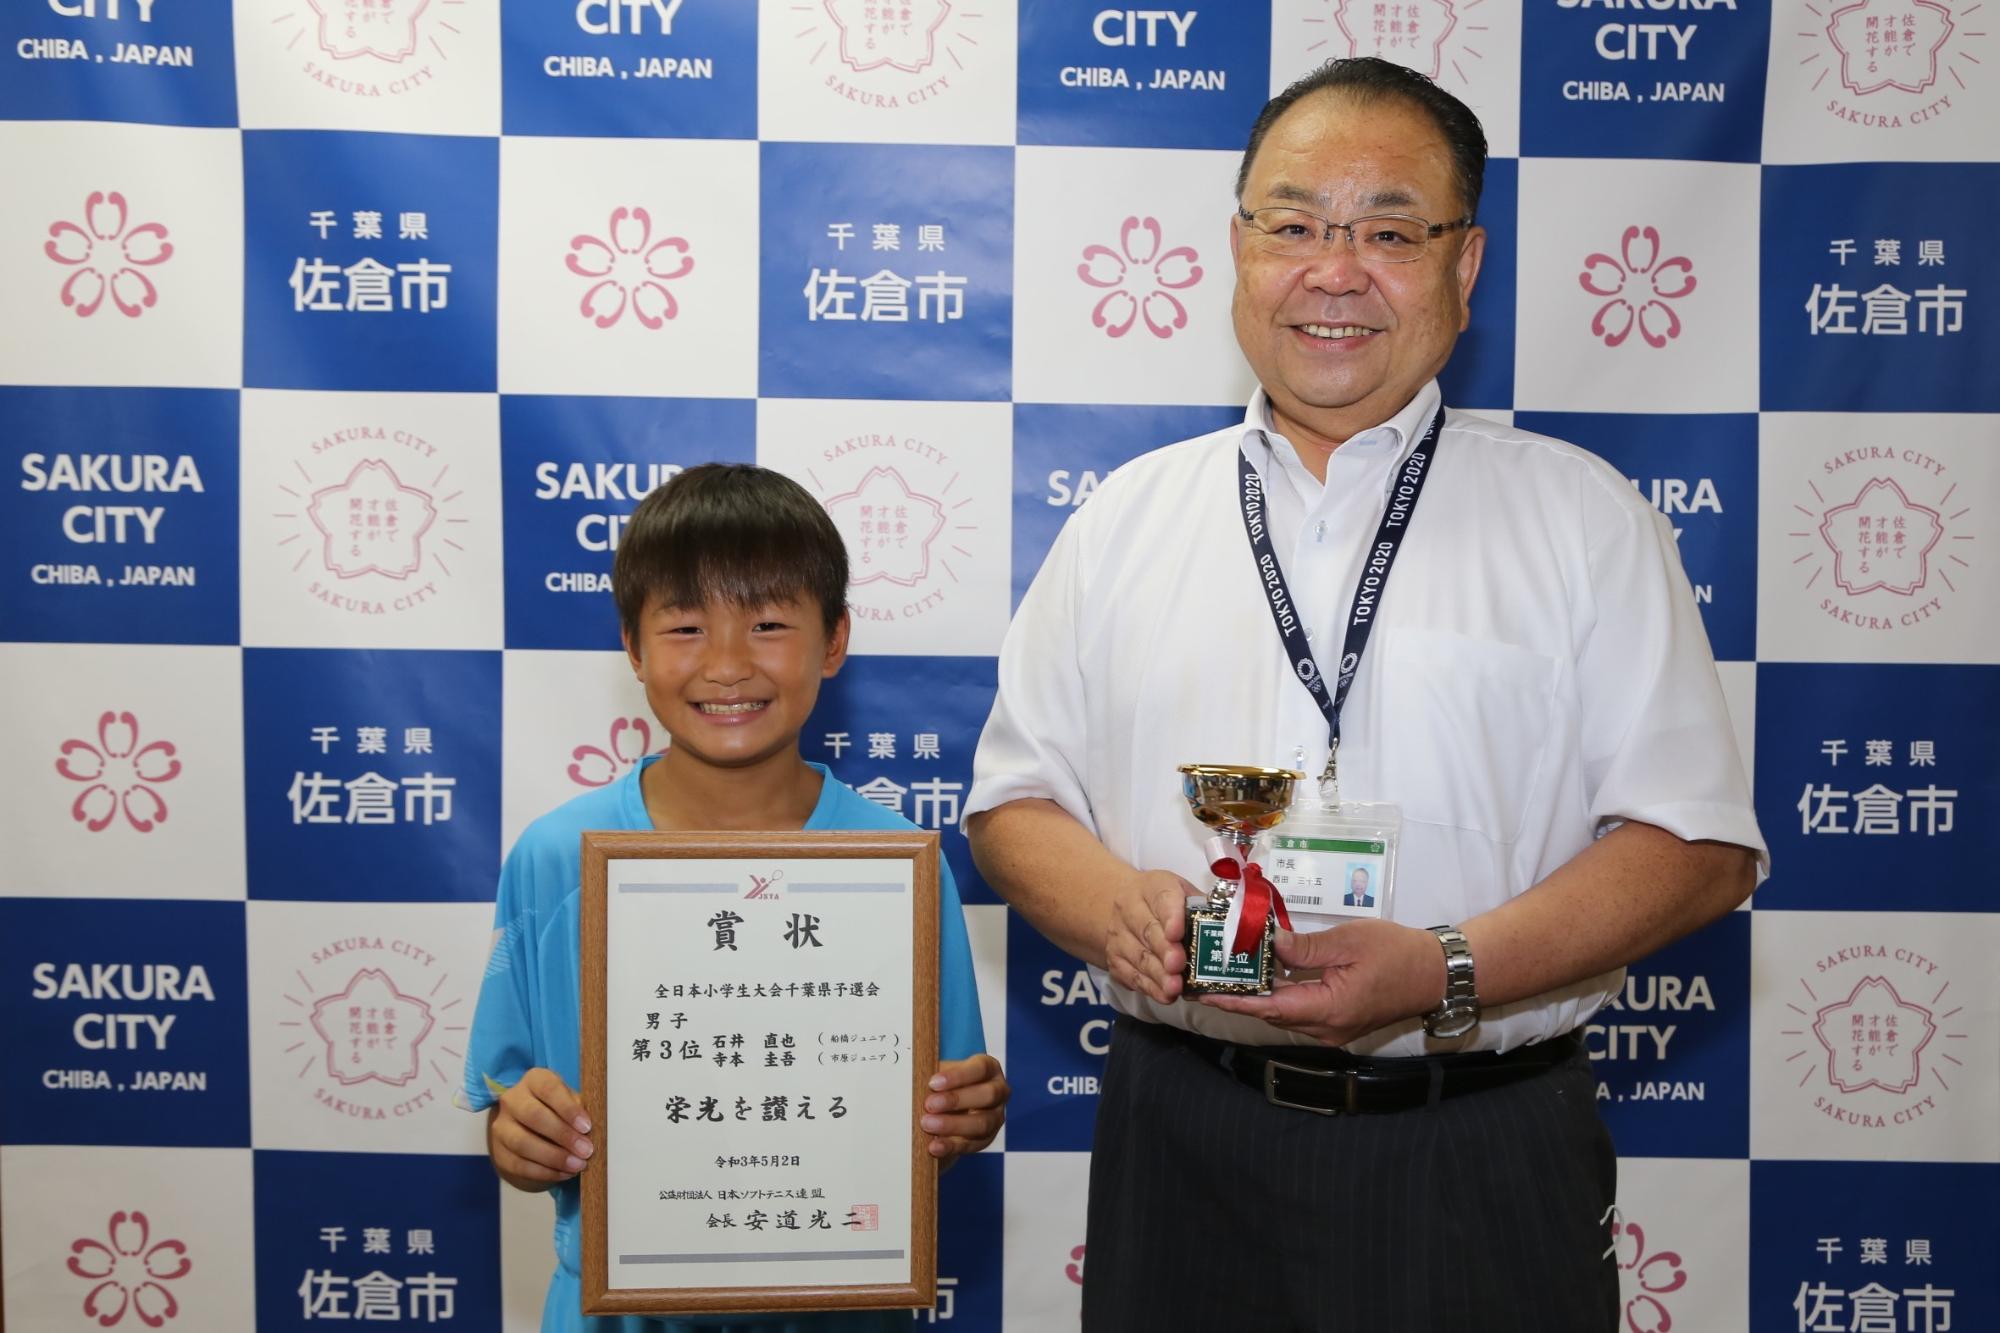 笑顔で額に入った賞状を持つ男の子と、その横でトロフィーを持つ市長の写真